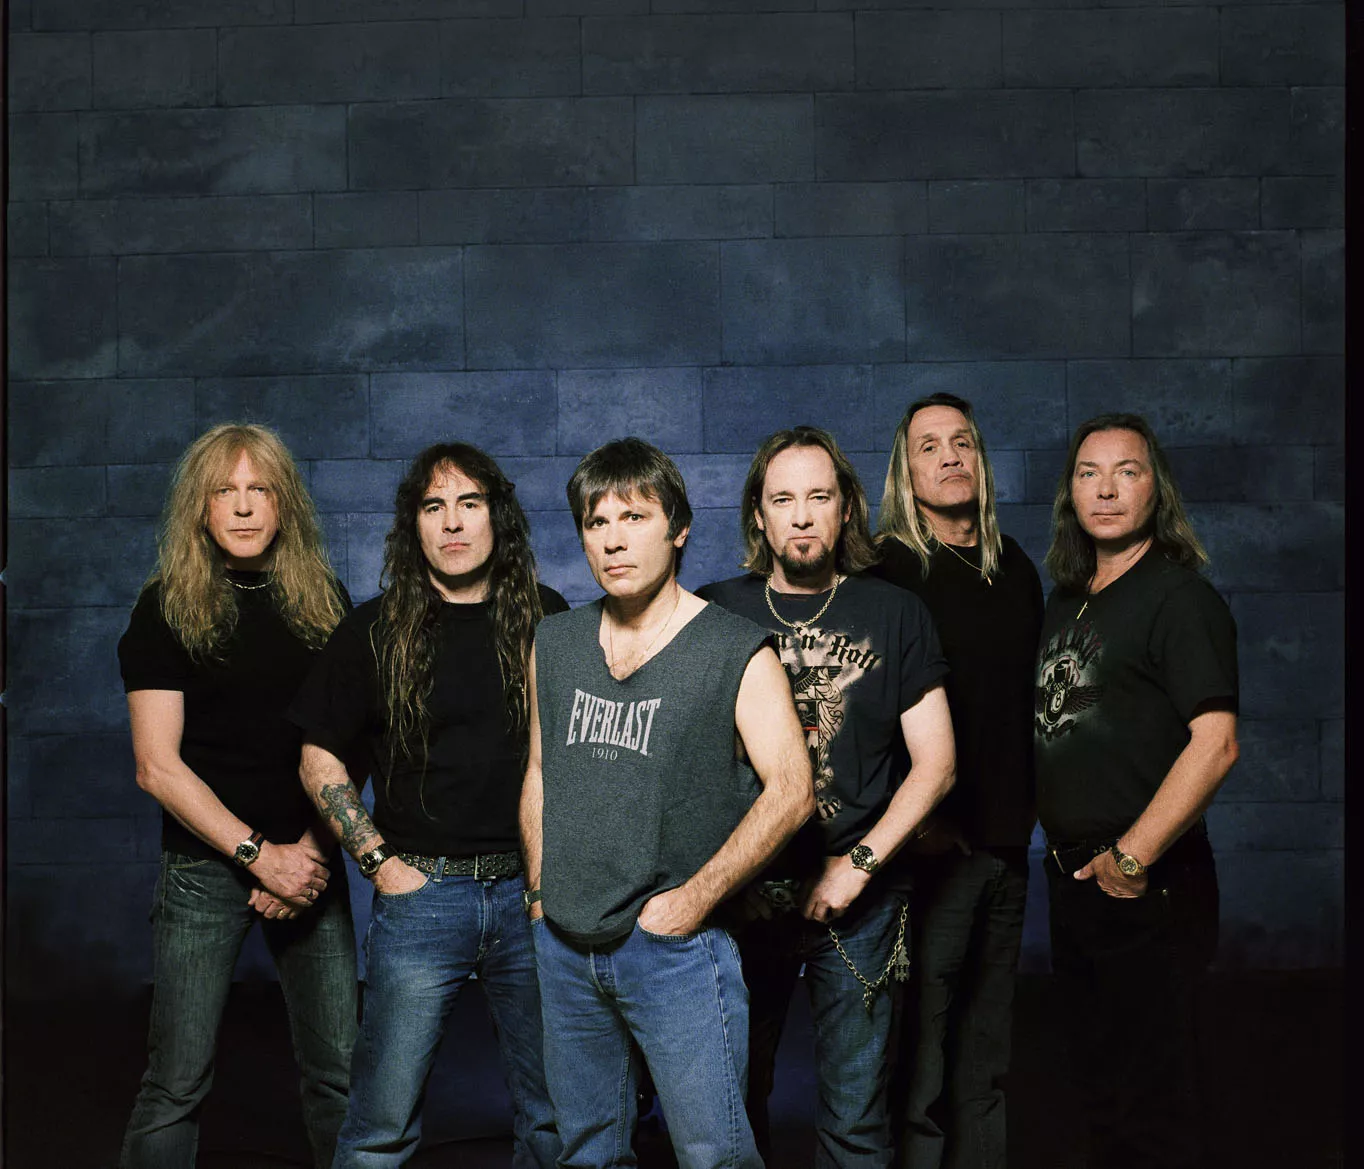 Iron Maiden-vokalisten mener tiden er moden for en selvbiografi